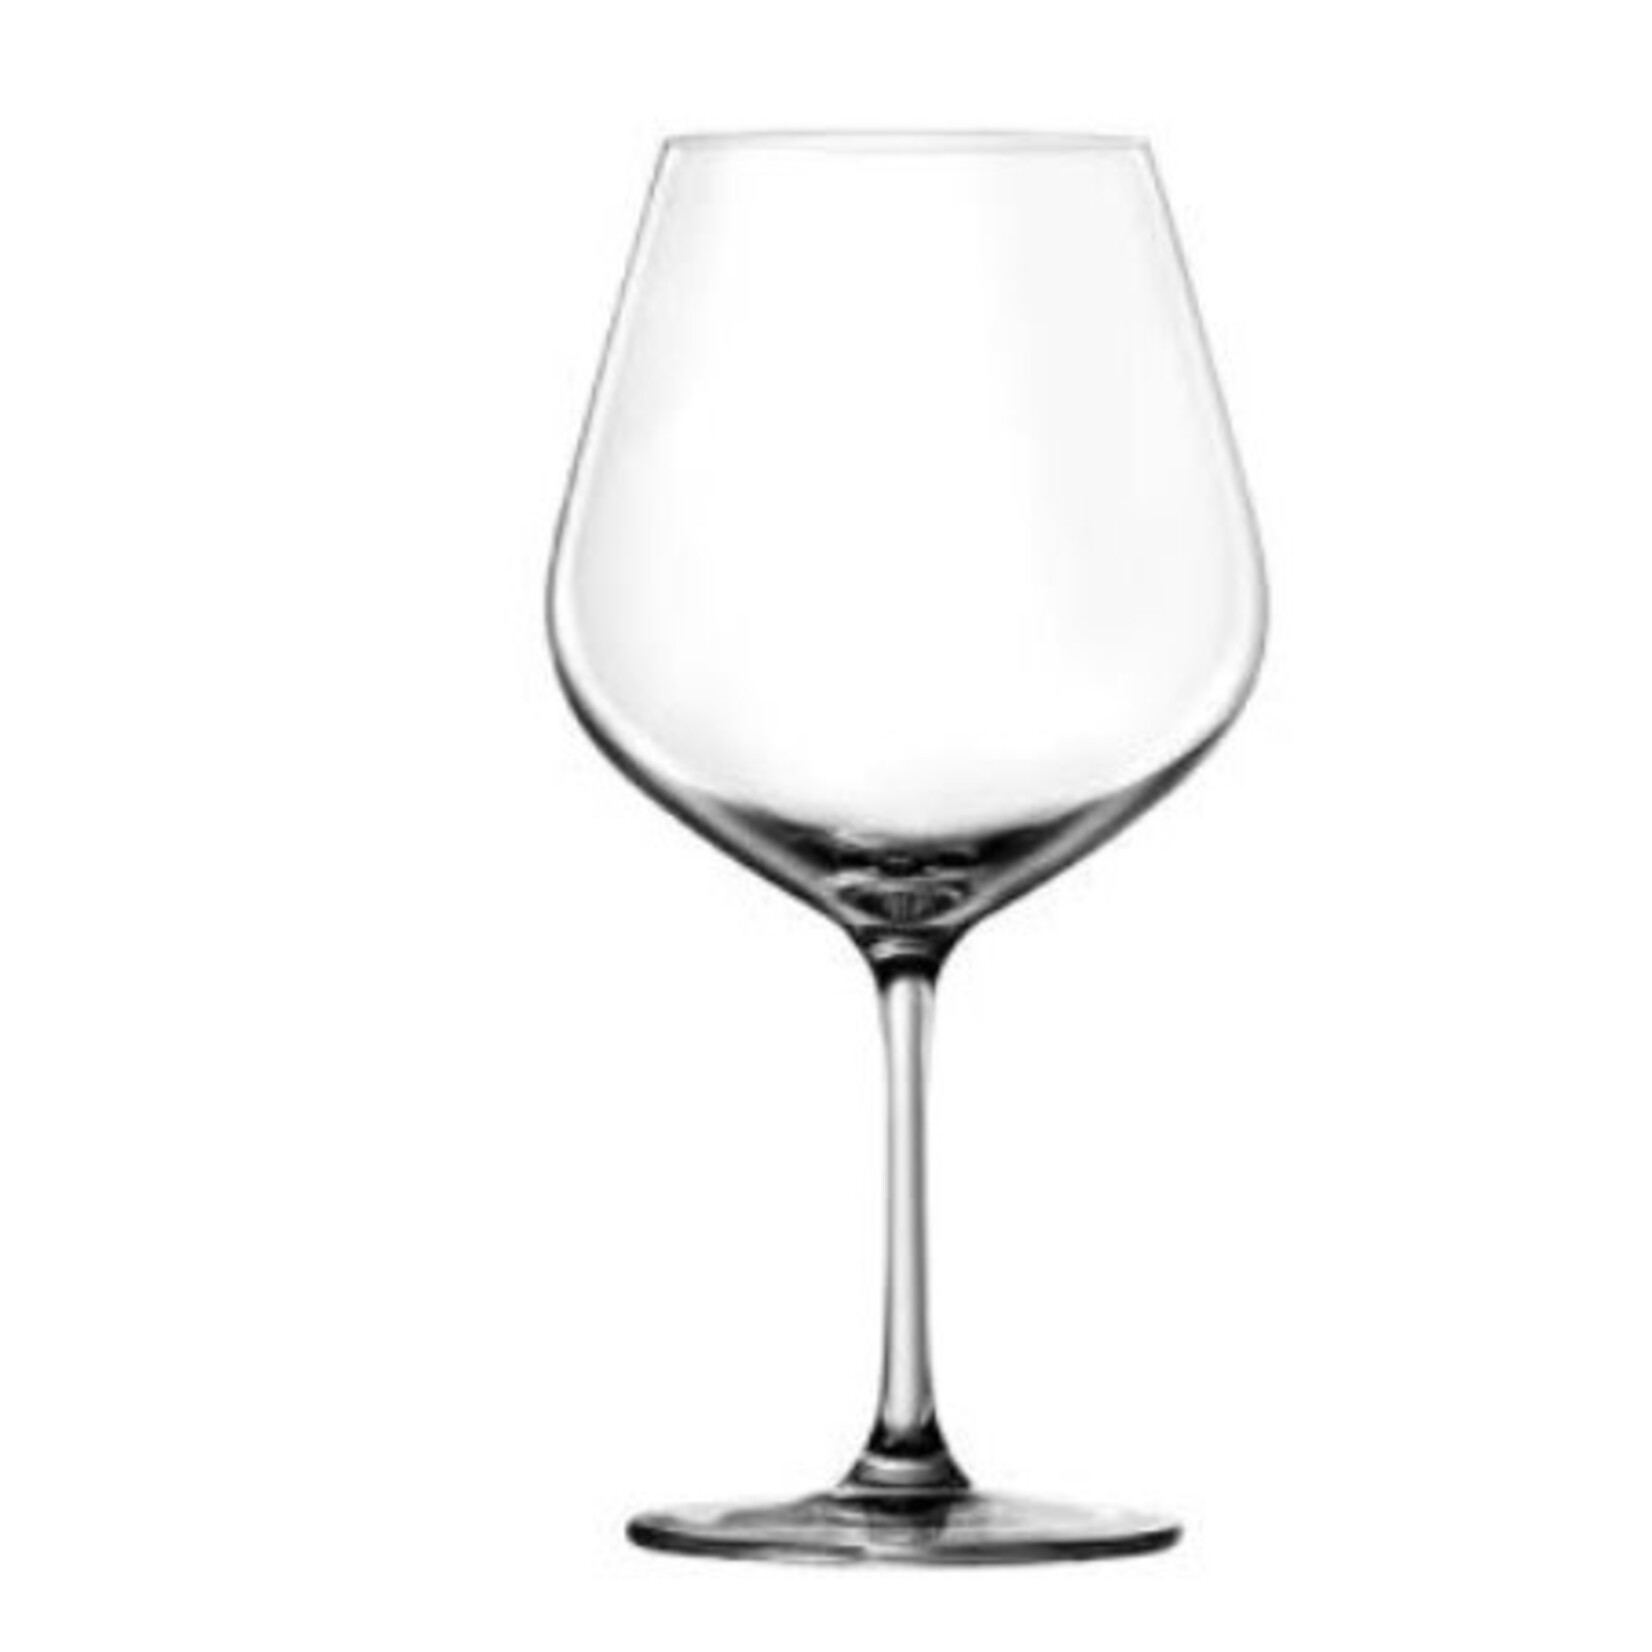 PUDDIFOOT PUDDIFOOT Wine Pinot 26oz  740ml Lead Free Crystal